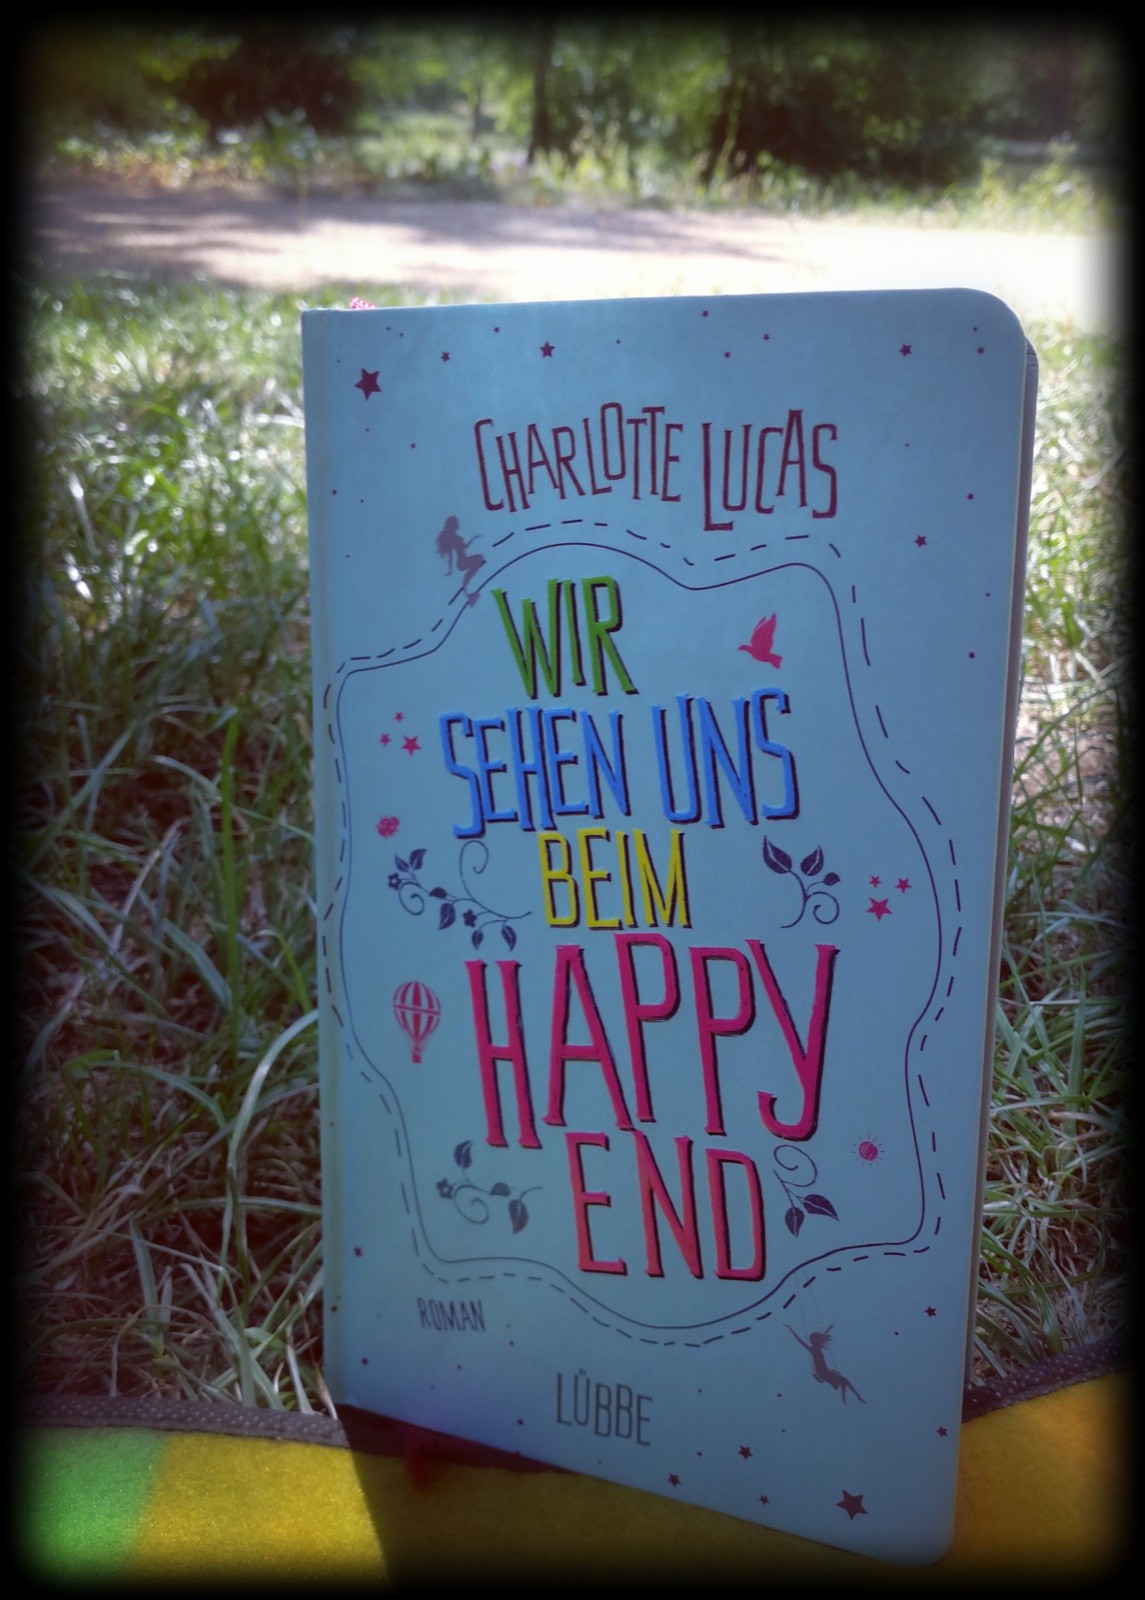 „Wir sehen uns beim Happy End“ von Charlotte Lucas - Der Leser benötigt einem langen Atem für diesen gegenwärtigen und doch zauberhaften Frauenroman